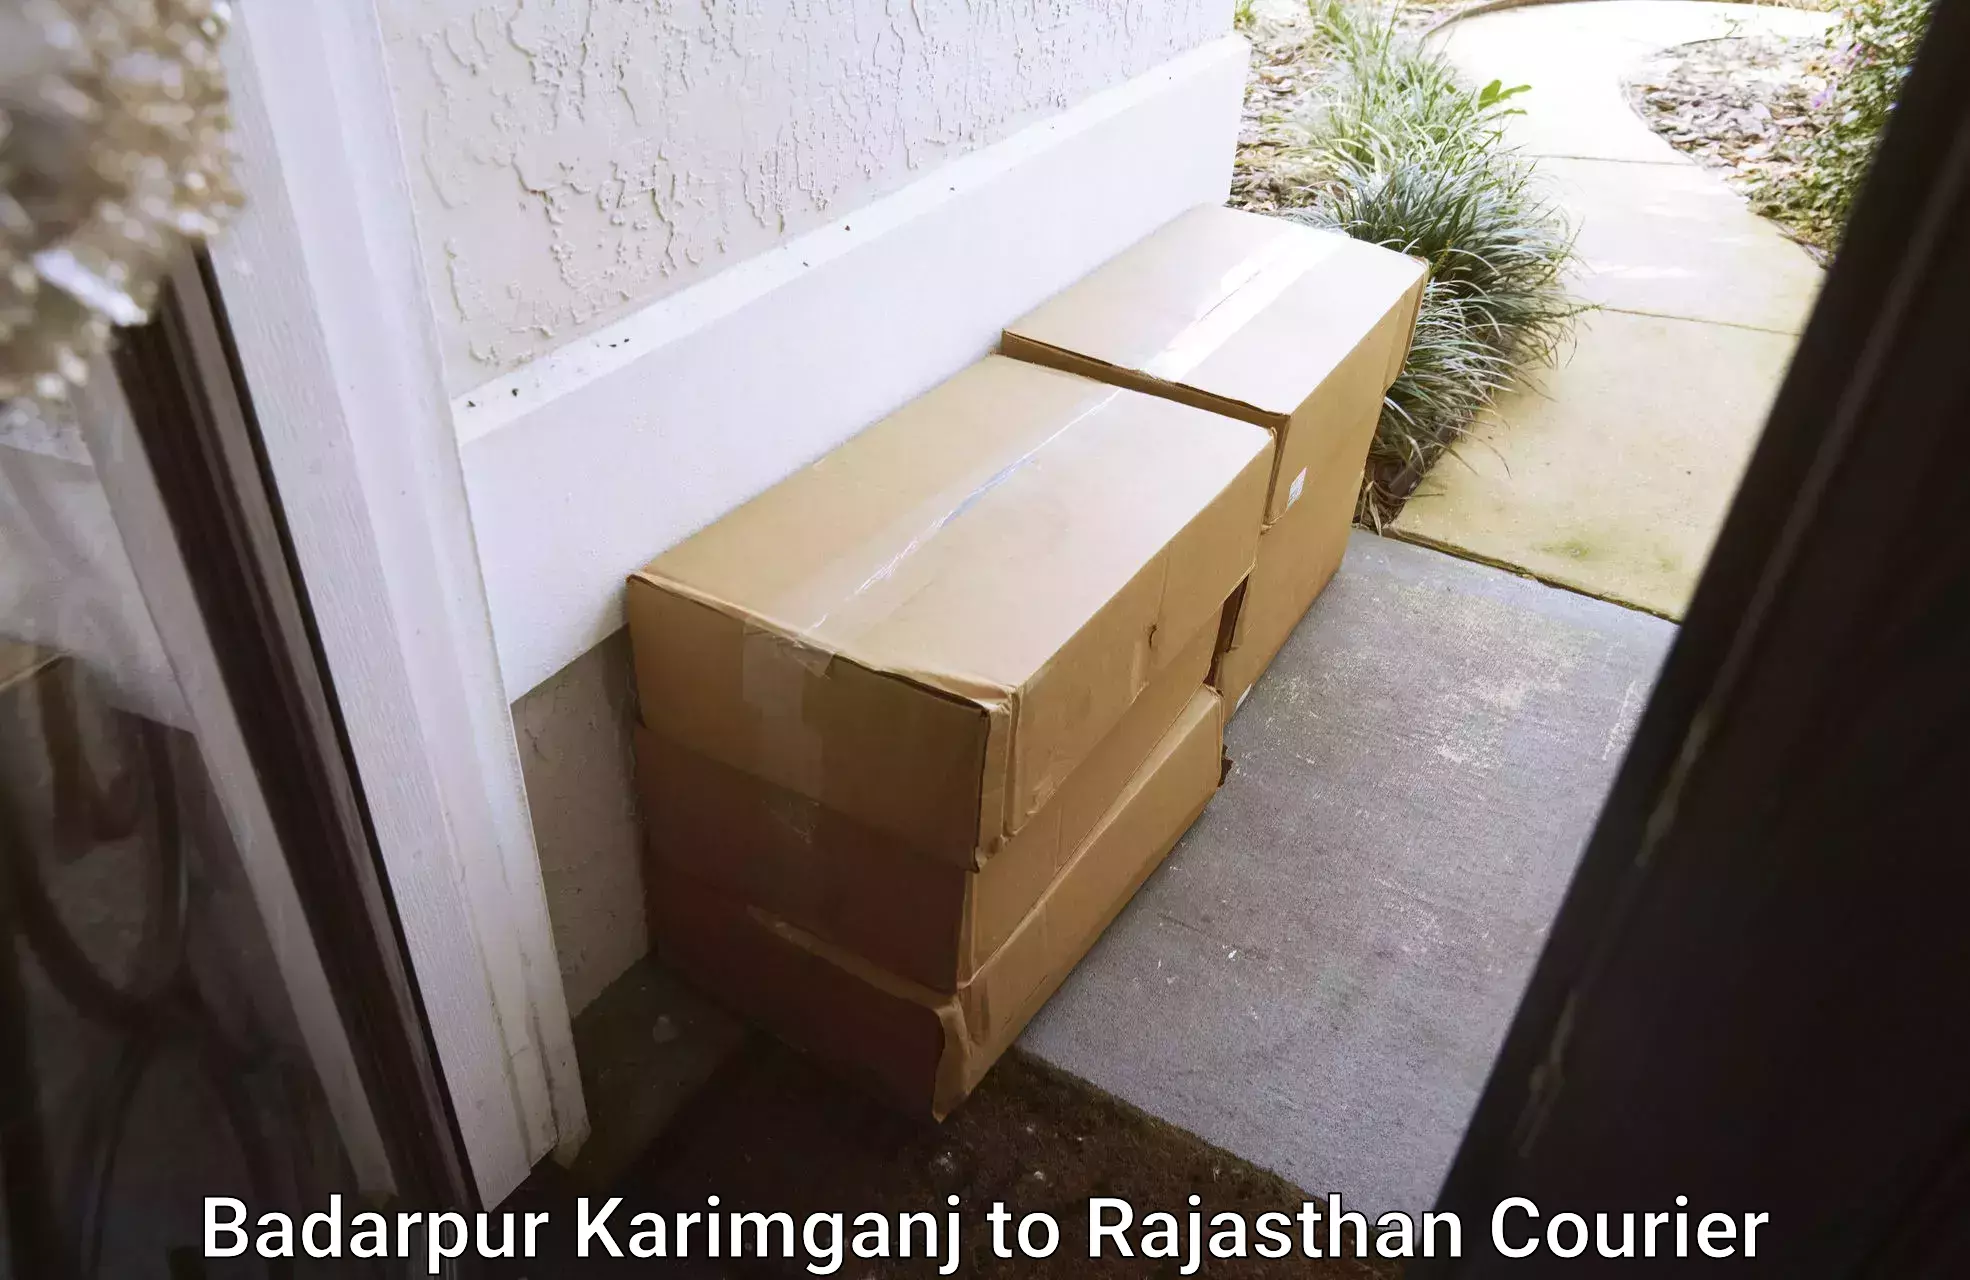 Diverse delivery methods Badarpur Karimganj to Alwar